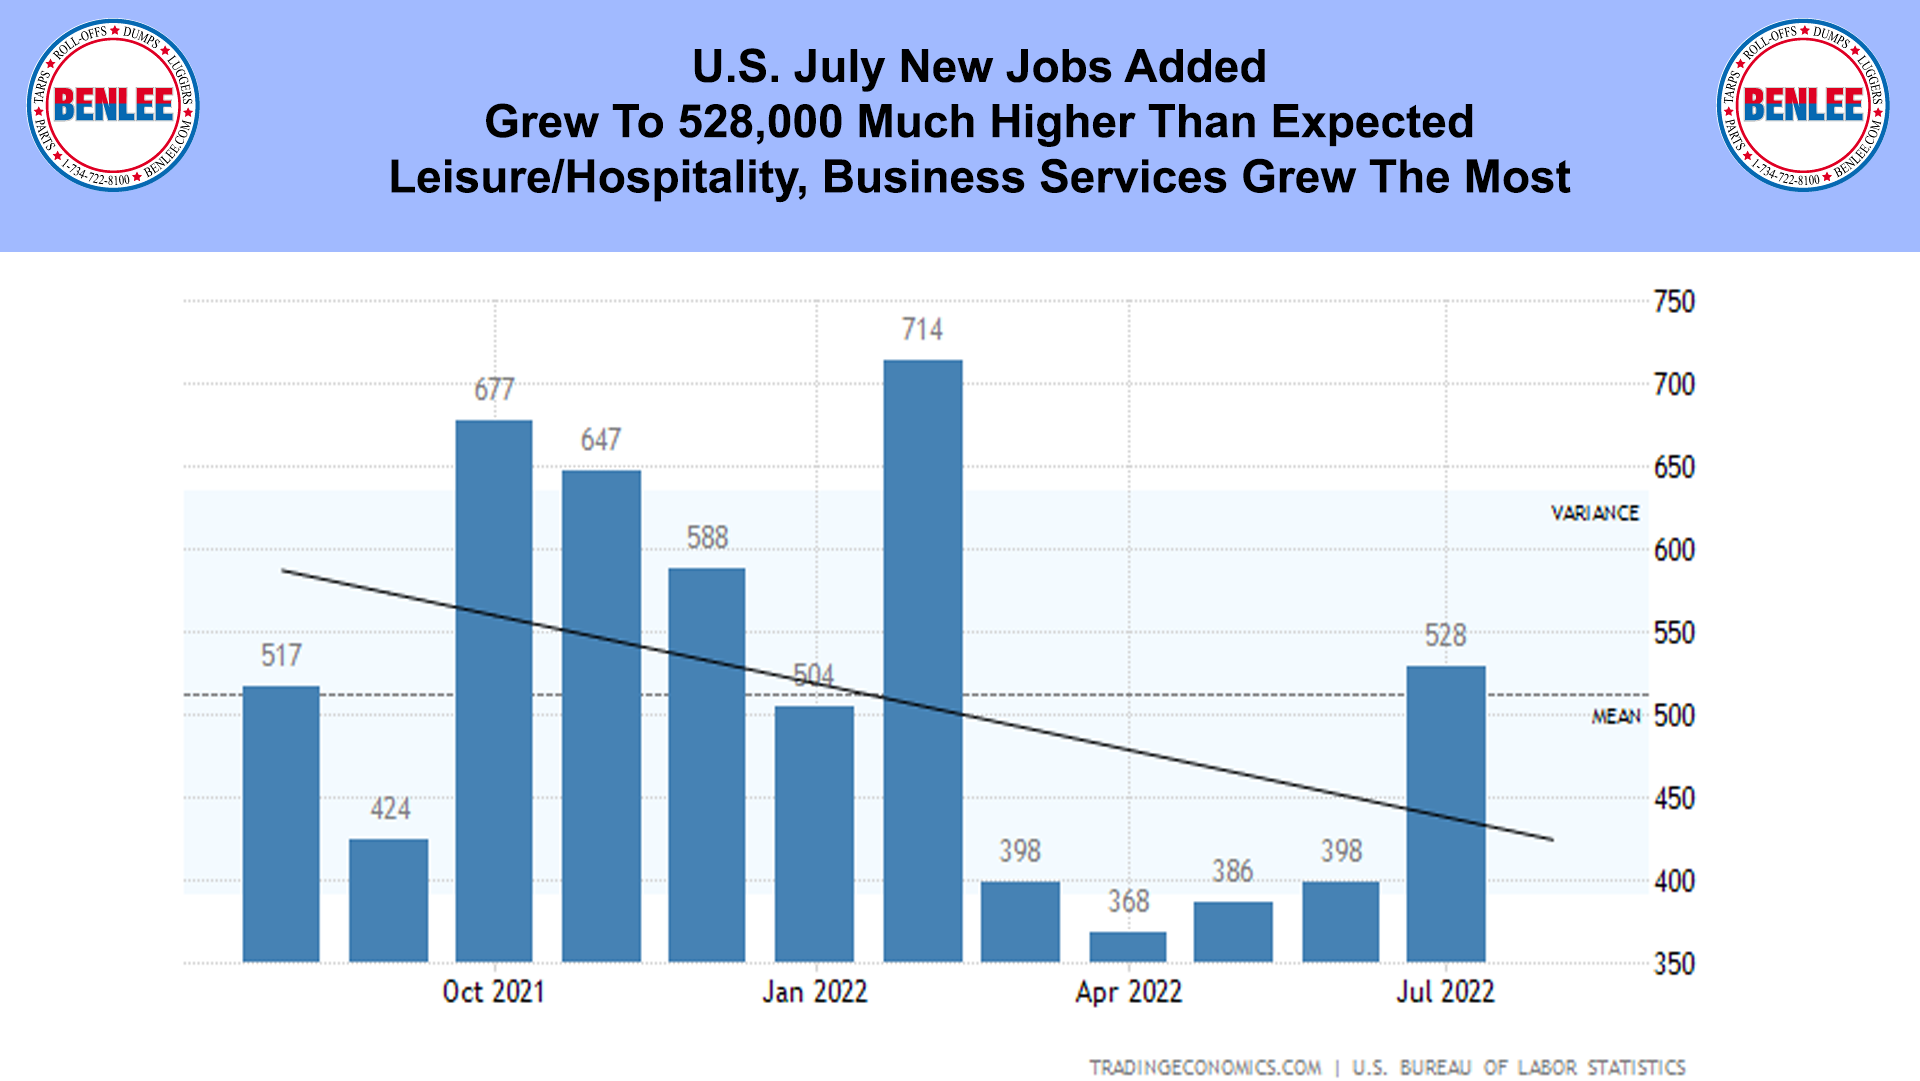 U.S. July New Jobs Added